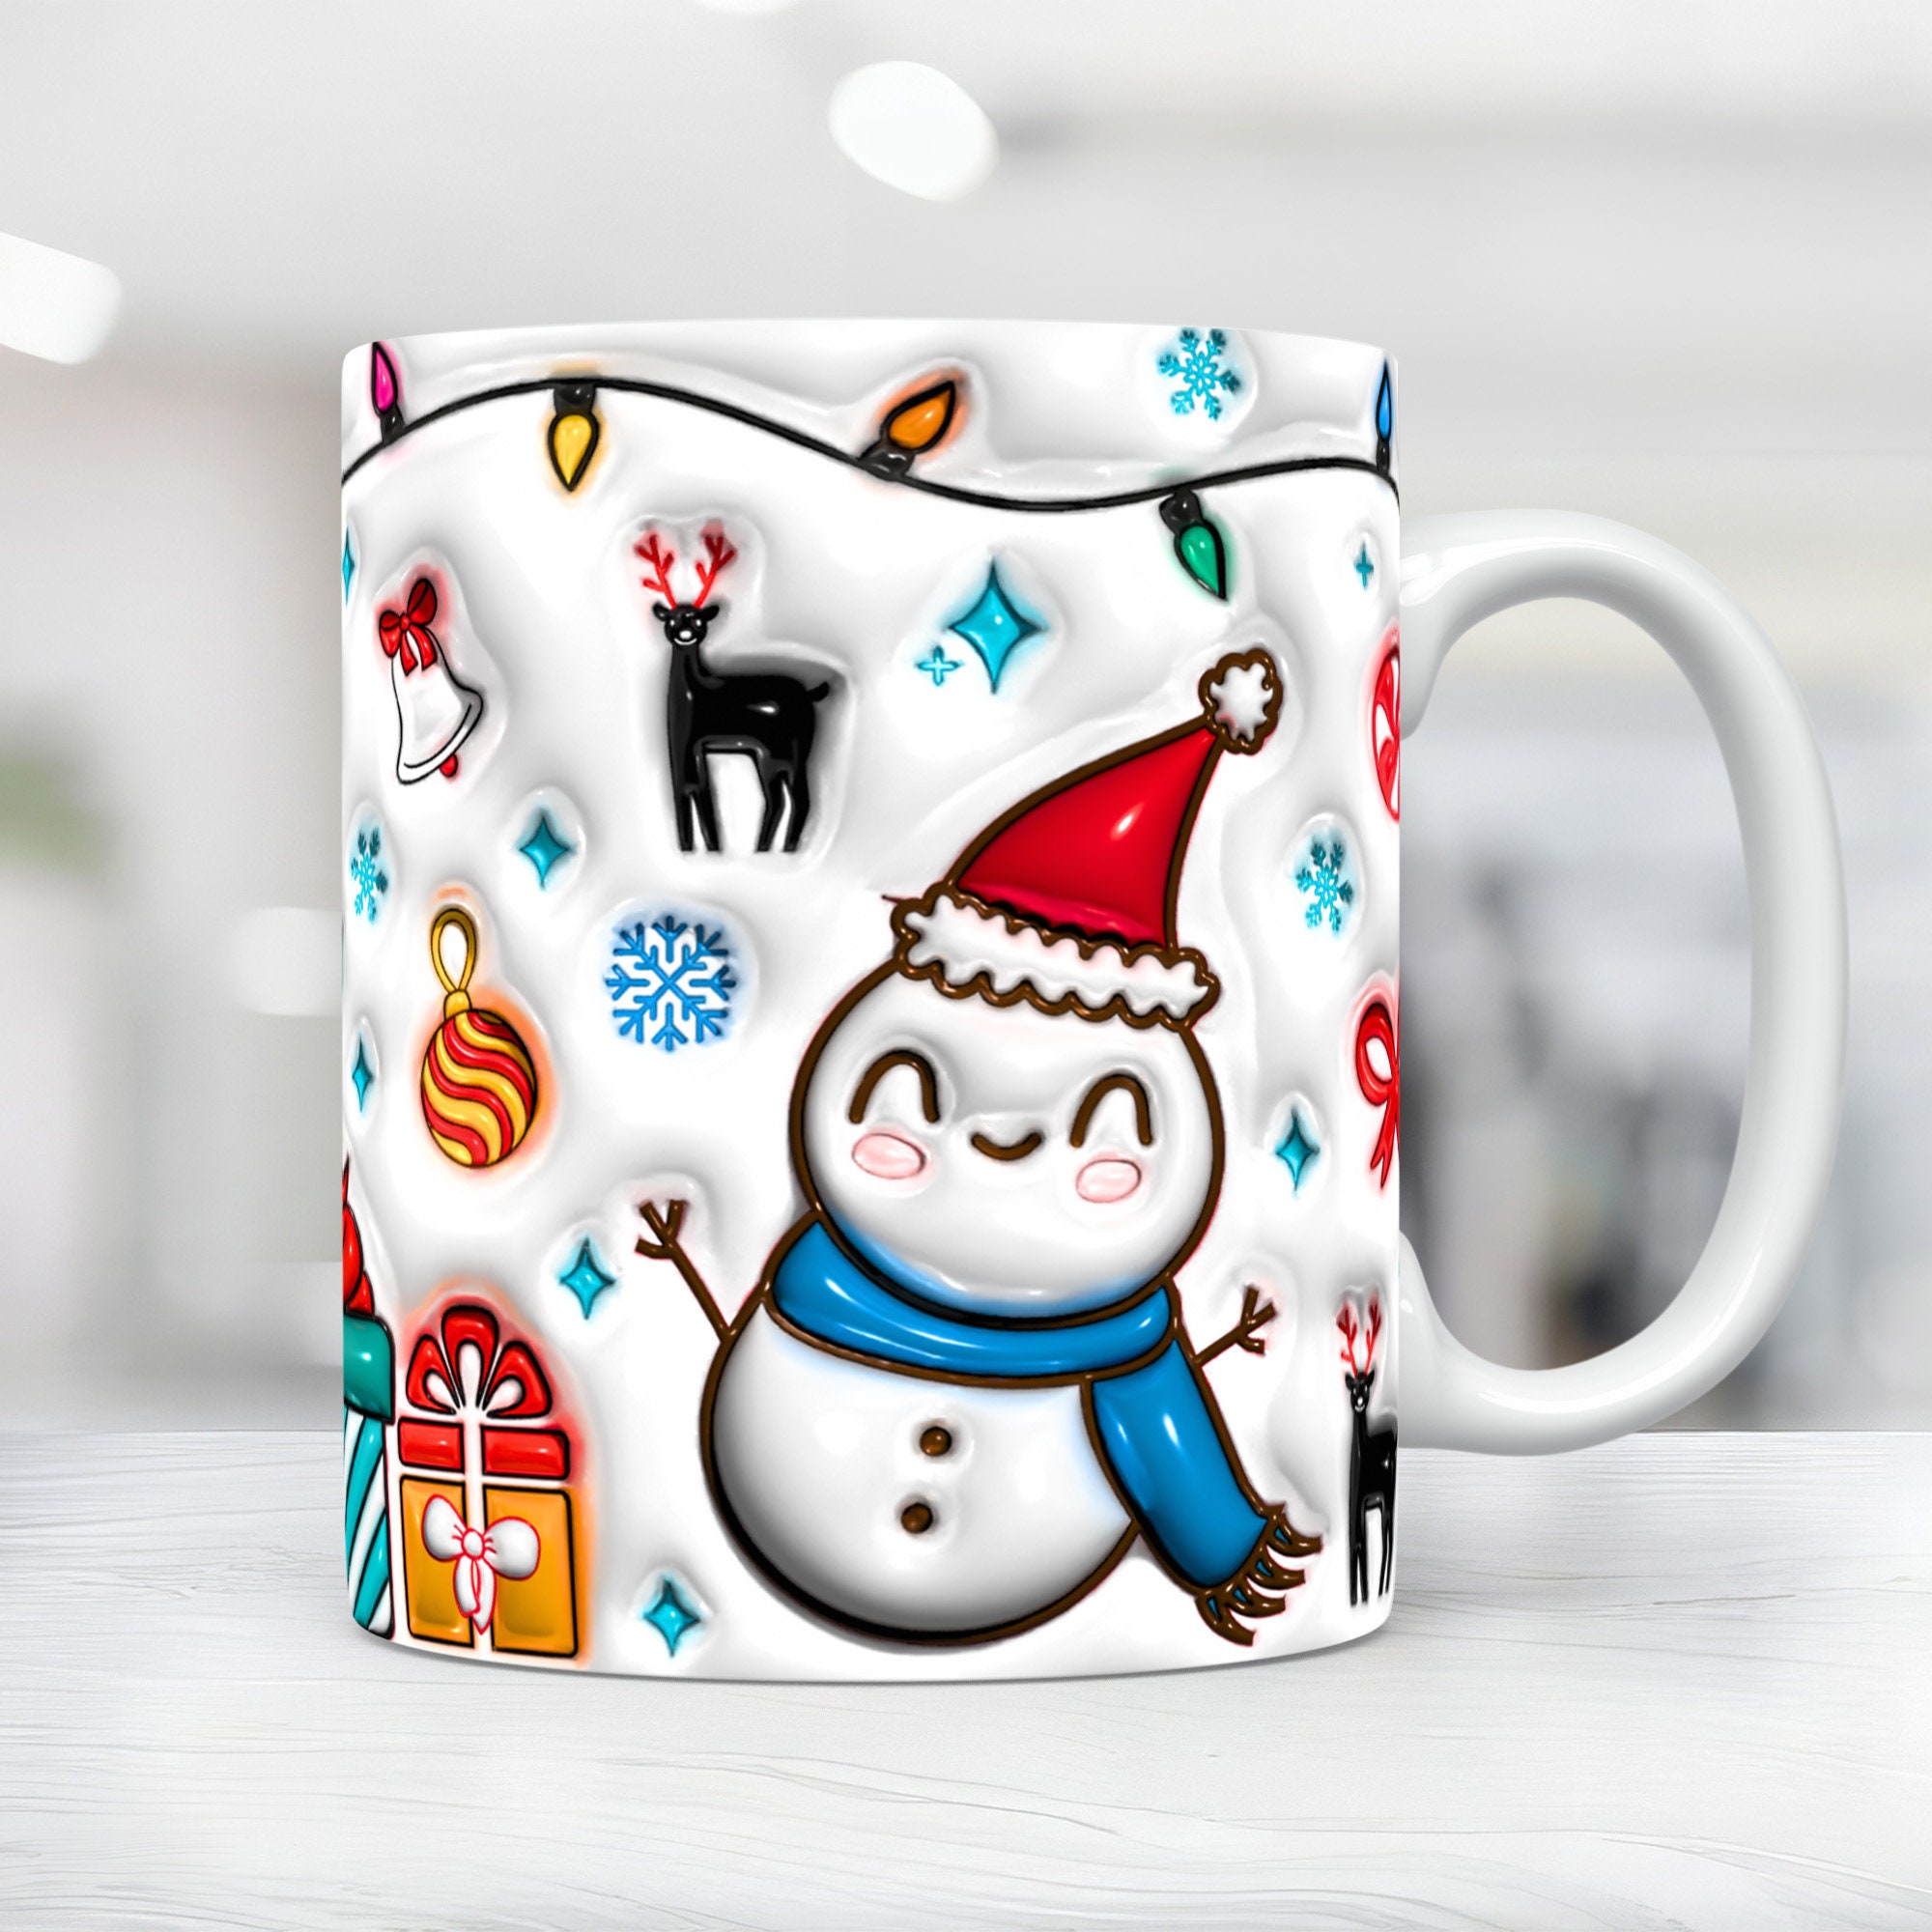 3D Snowman Mug, Christmas Mug, 3D Inflated Puffy Mug Cup 1 - Inspire Uplift